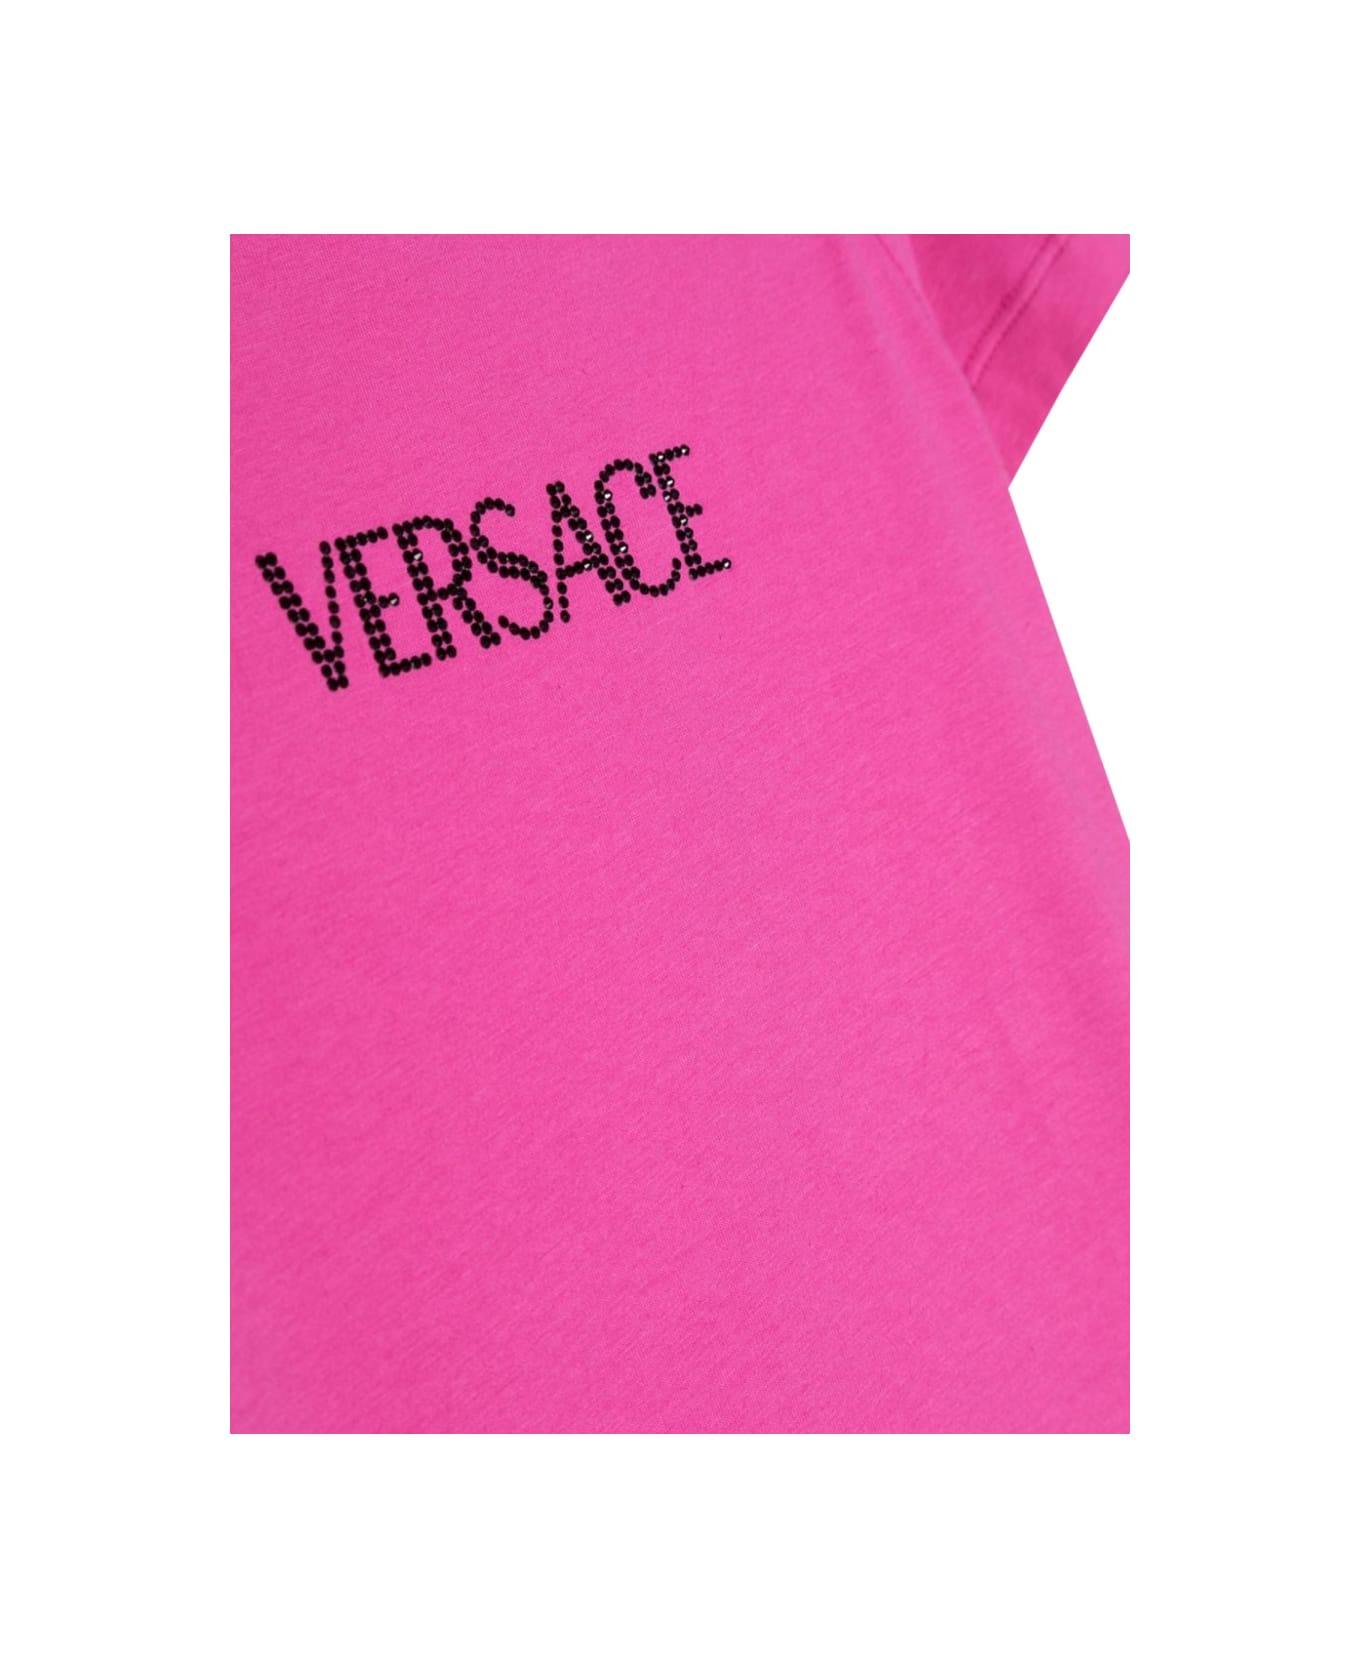 Versace Rhinestone Logo T-shirt - FUCHSIA